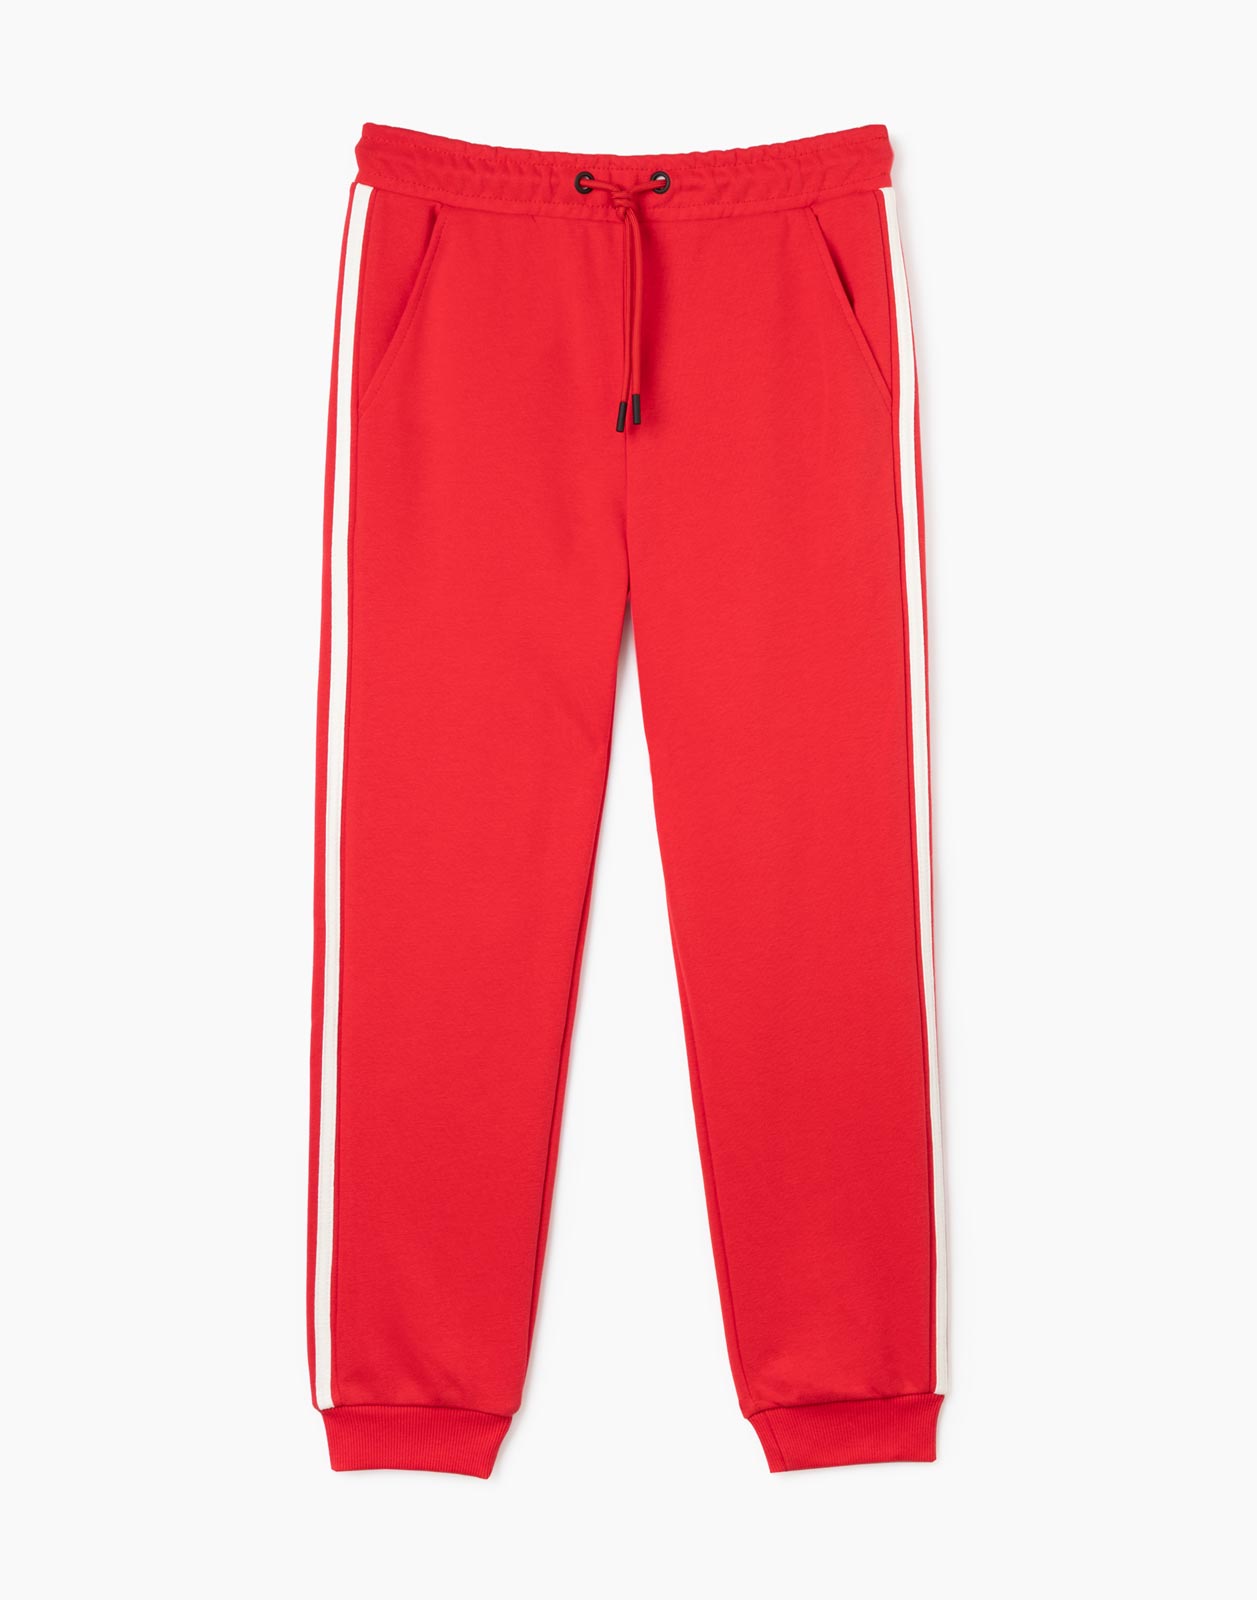 Красные спортивные брюки Jogger с лампасами для мальчика р.116